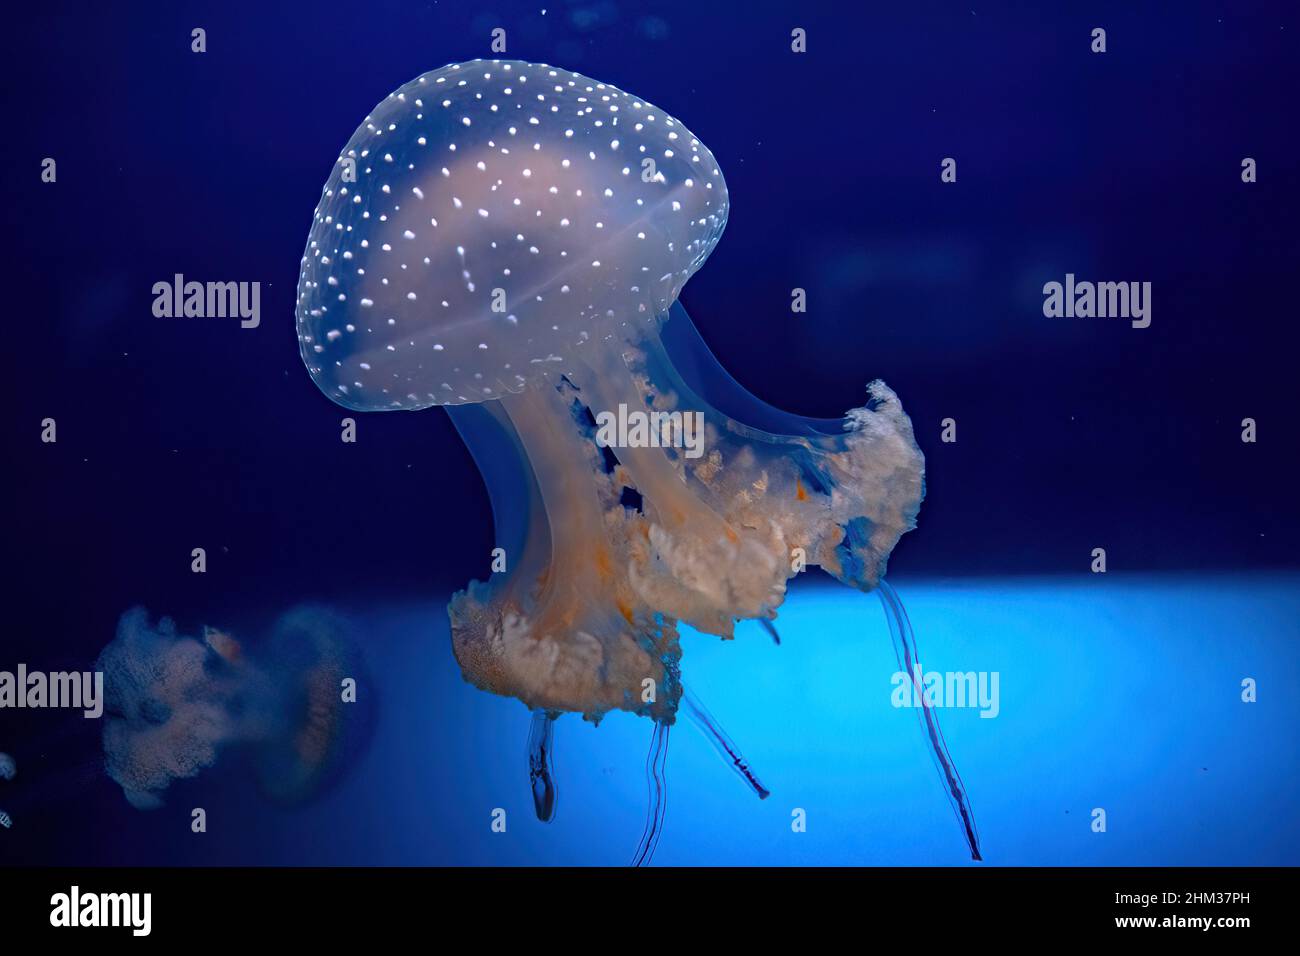 Pesci meduse australiani di acquario galleggiante in acqua. Phyllorhiza punctata specie che vivono in acque tropicali del Pacifico occidentale da Foto Stock